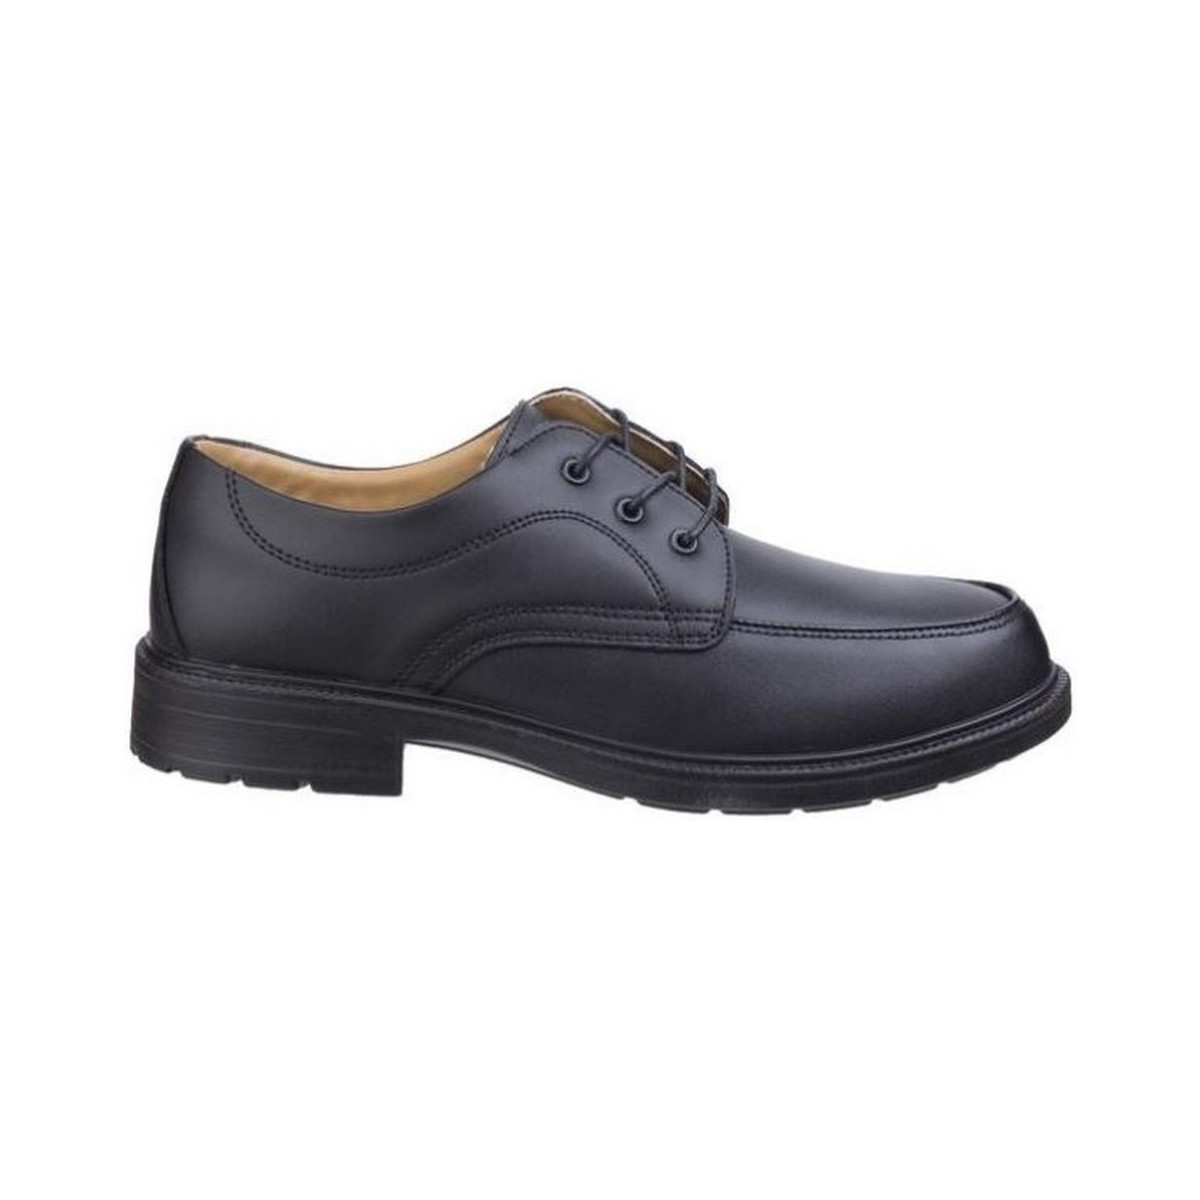 Zapatos Mujer Zapatos de trabajo Amblers FS65 SAFETY Negro